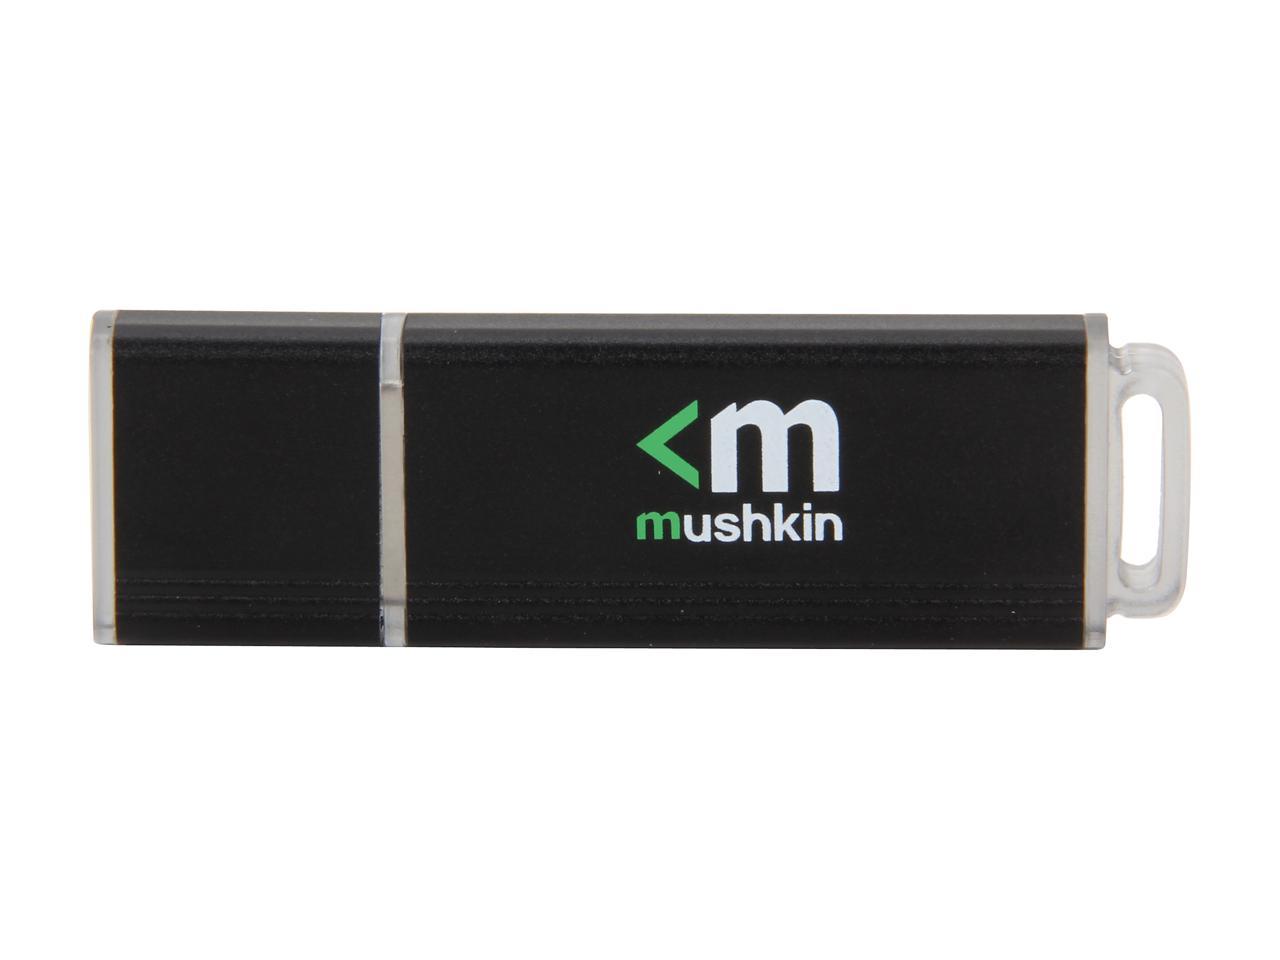 Mushkin Ventura Plus 32GB USB 3.0 Ultra High Speed Flash Drive Model MKNUFDVS32GB